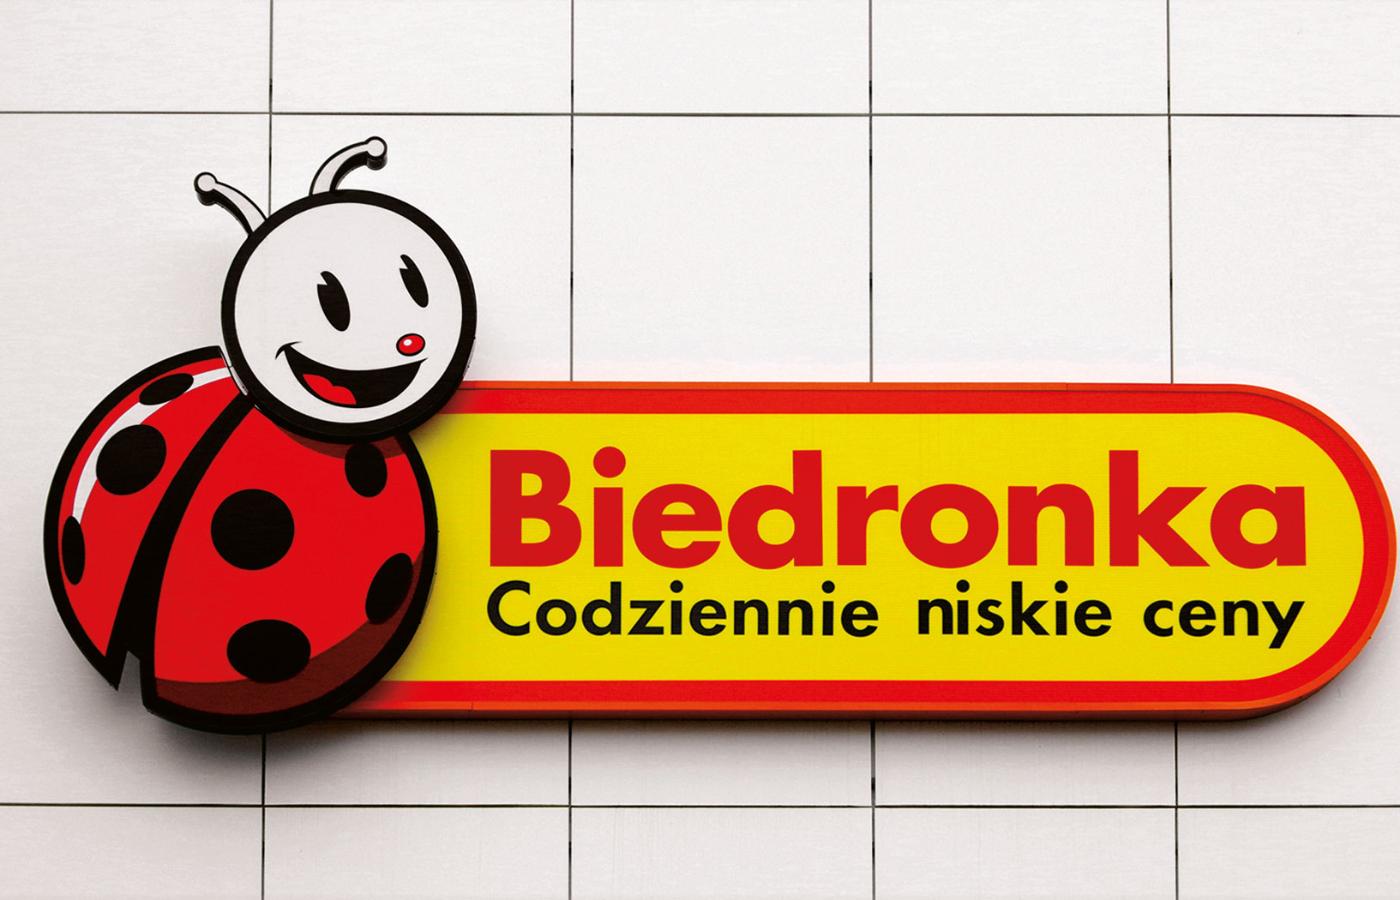 Mająca w Polsce już ponad 3 tys. sklepów i ponad 54 mld zł rocznego obrotu Biedronka, ale też inne dyskonty to najwięksi odbiorcy polskiej żywności.